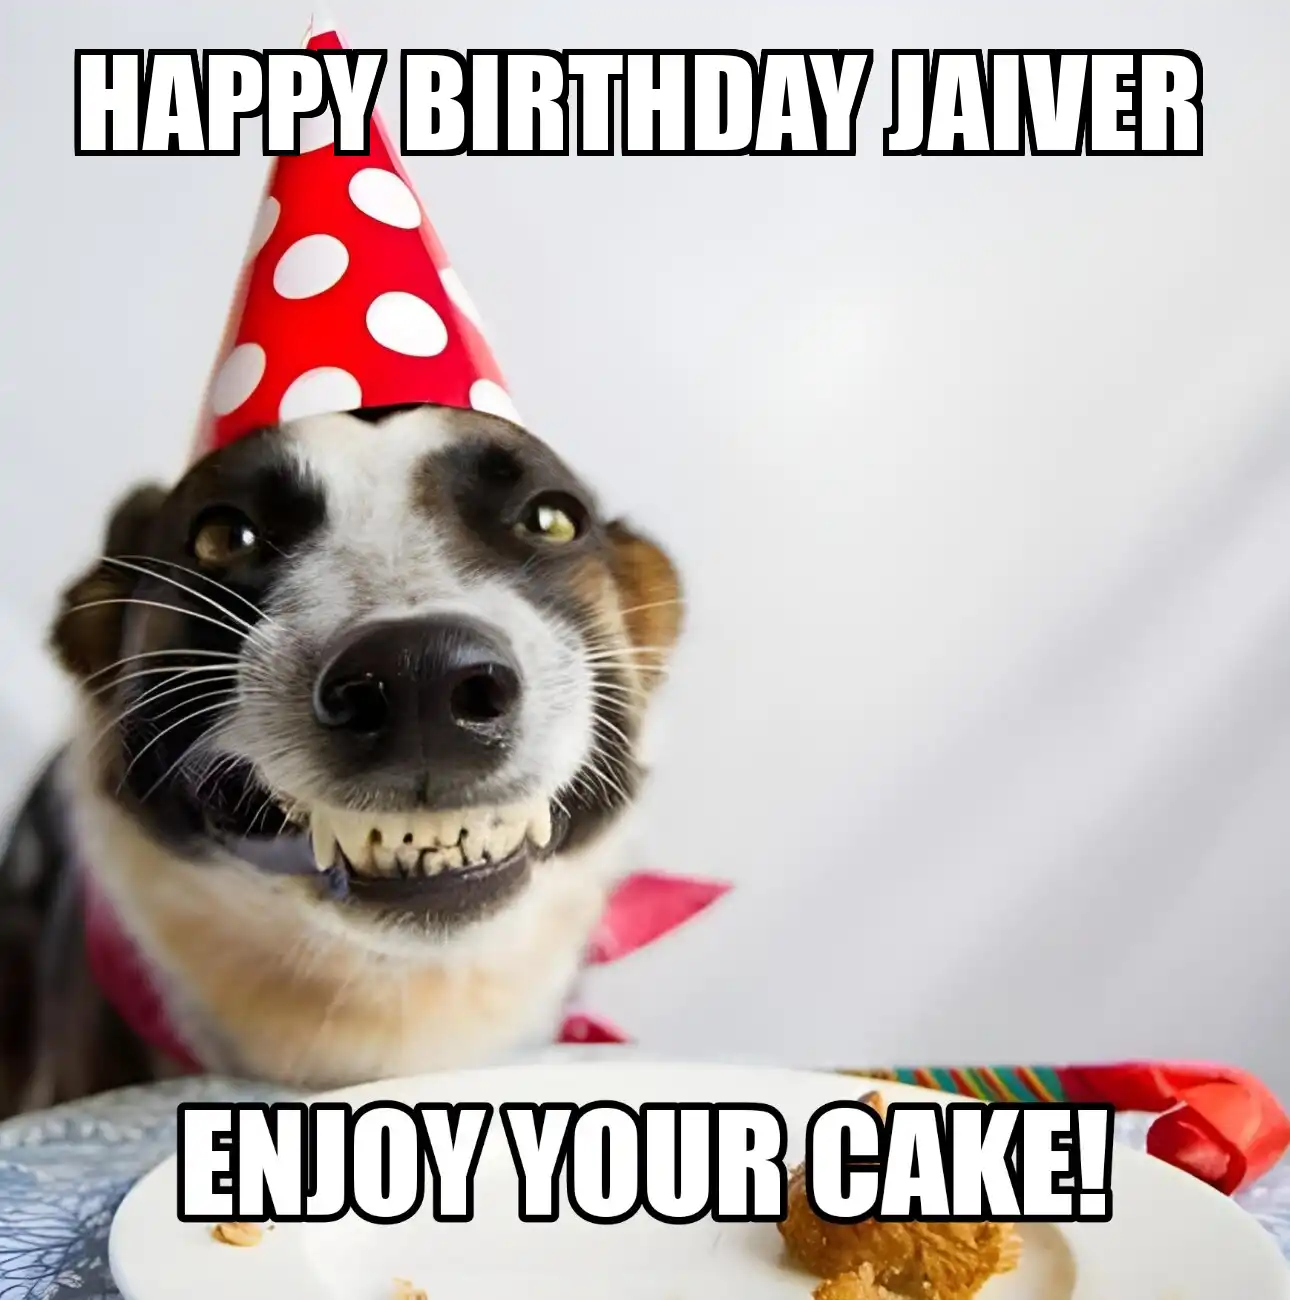 Happy Birthday Jaiver Enjoy Your Cake Dog Meme